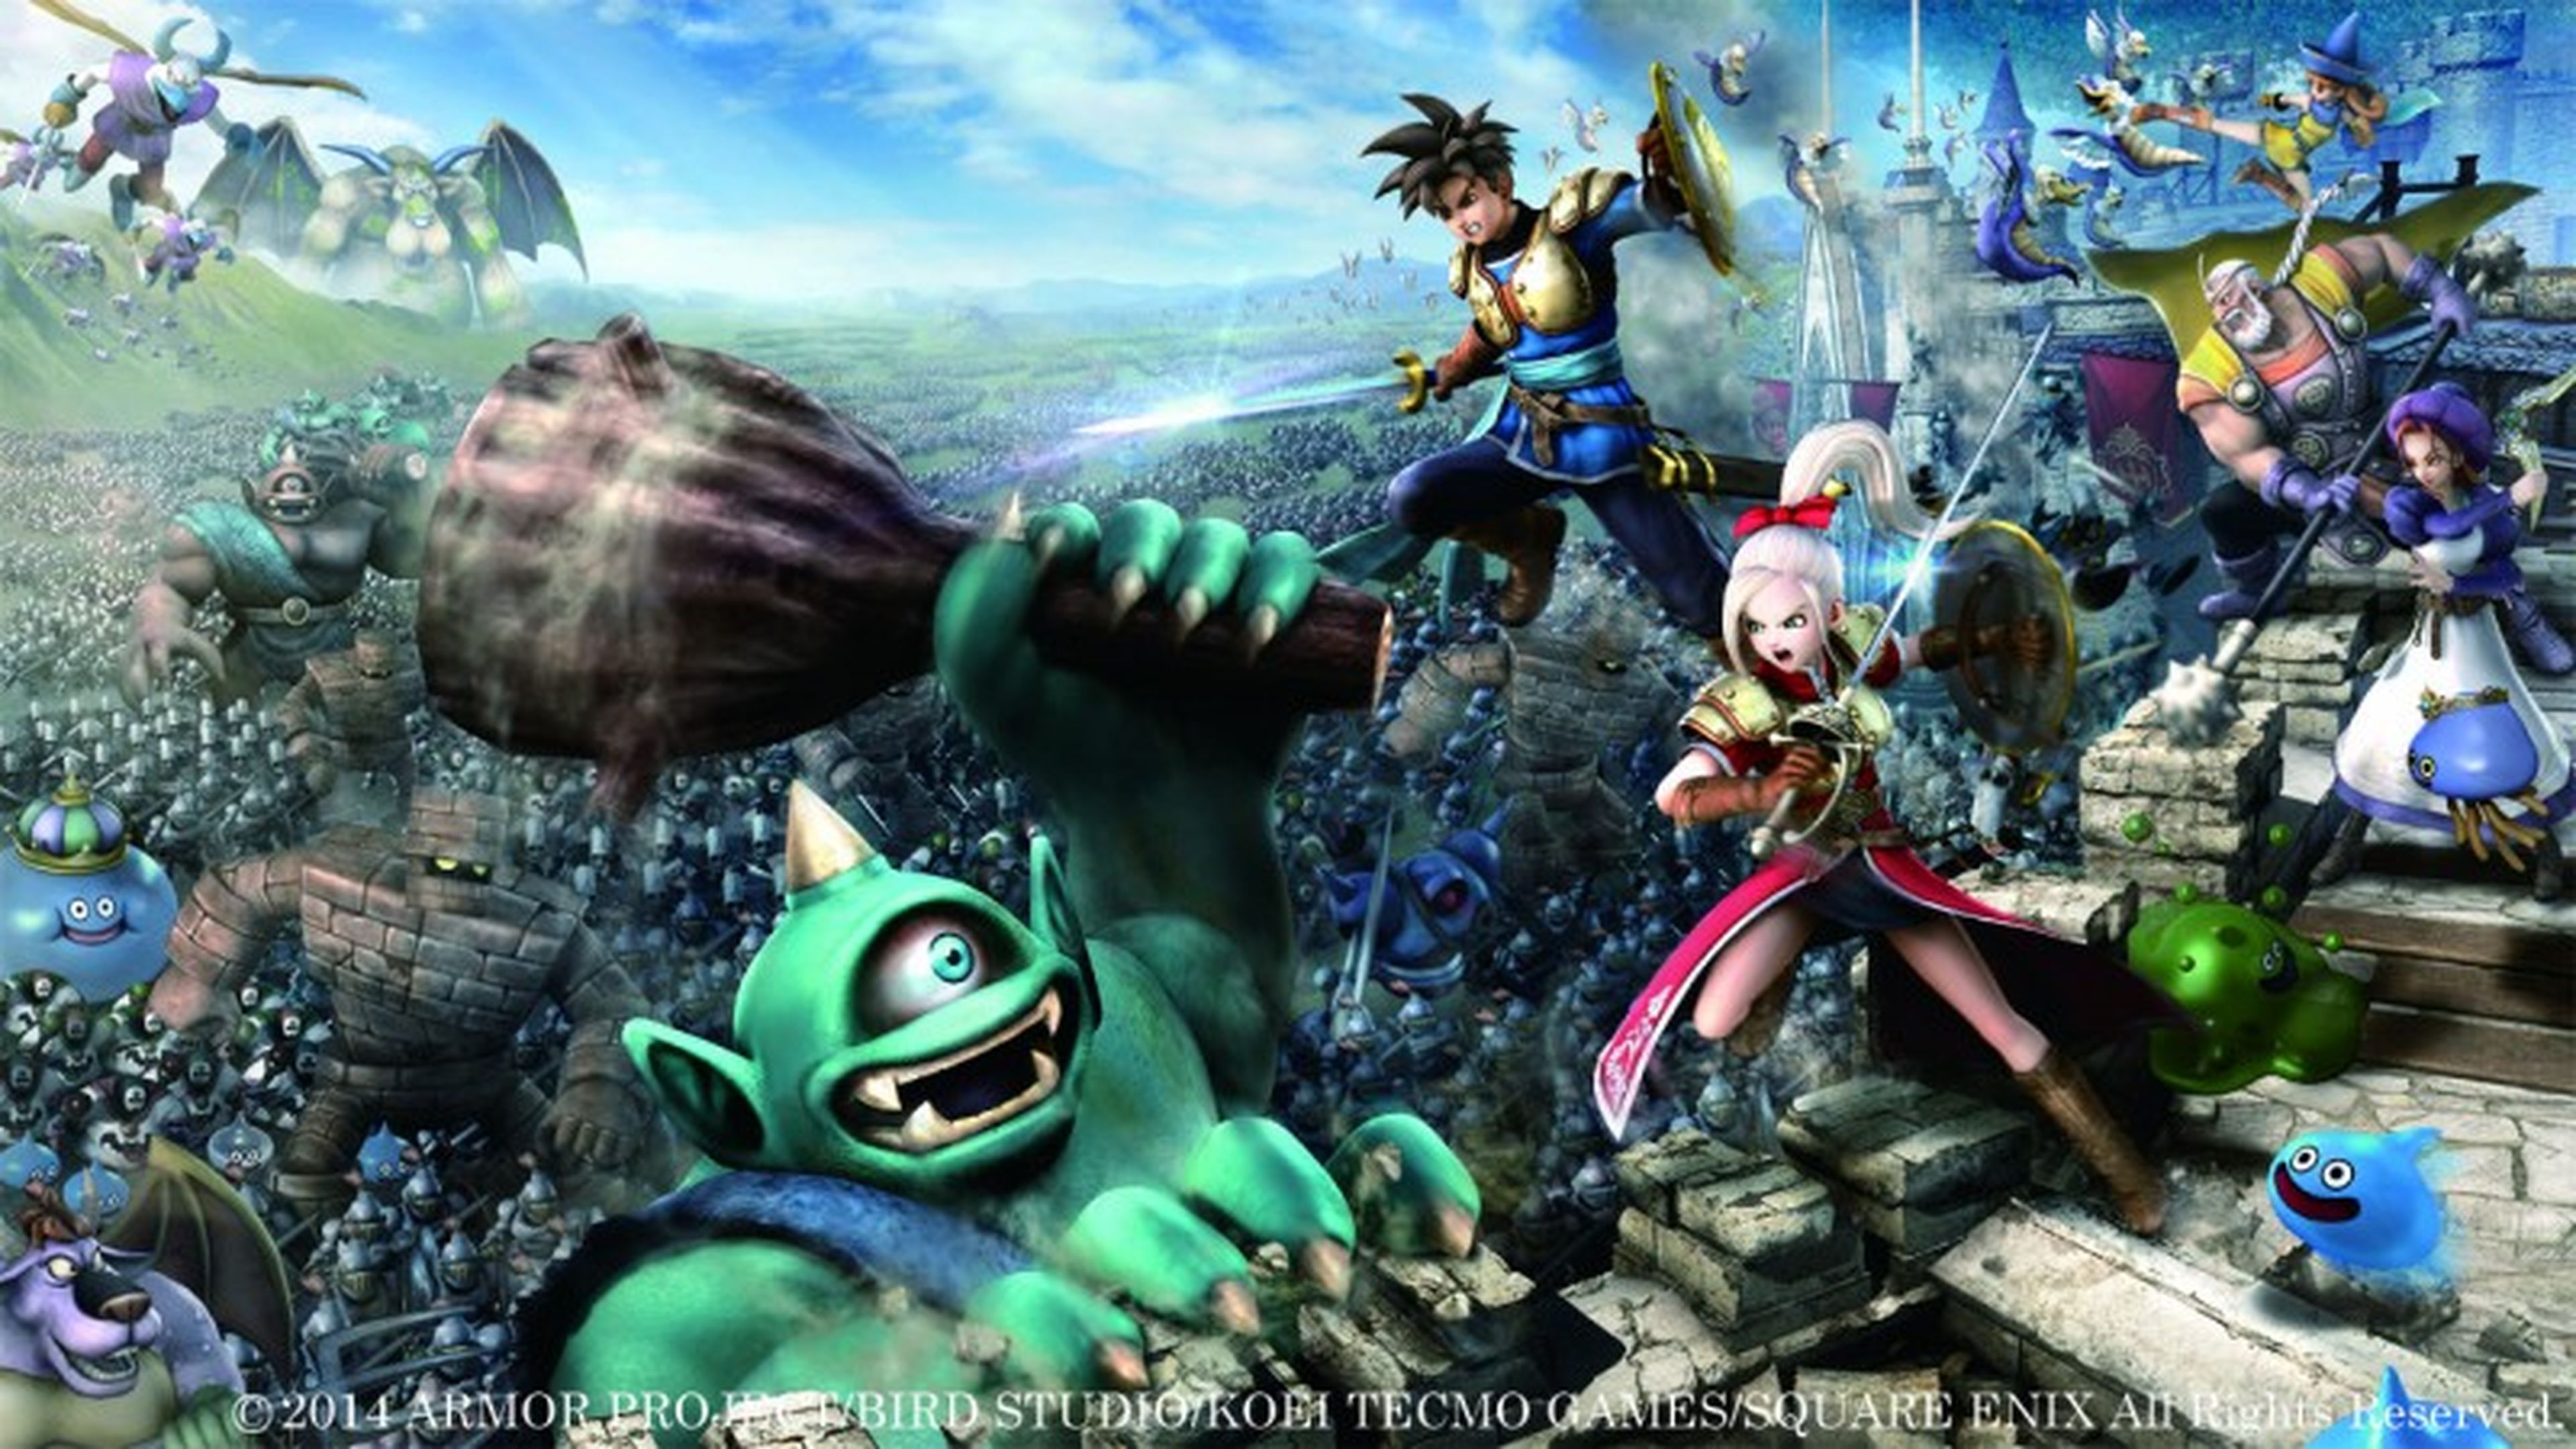 Nueva información y escaneos de Dragon Quest Heroes